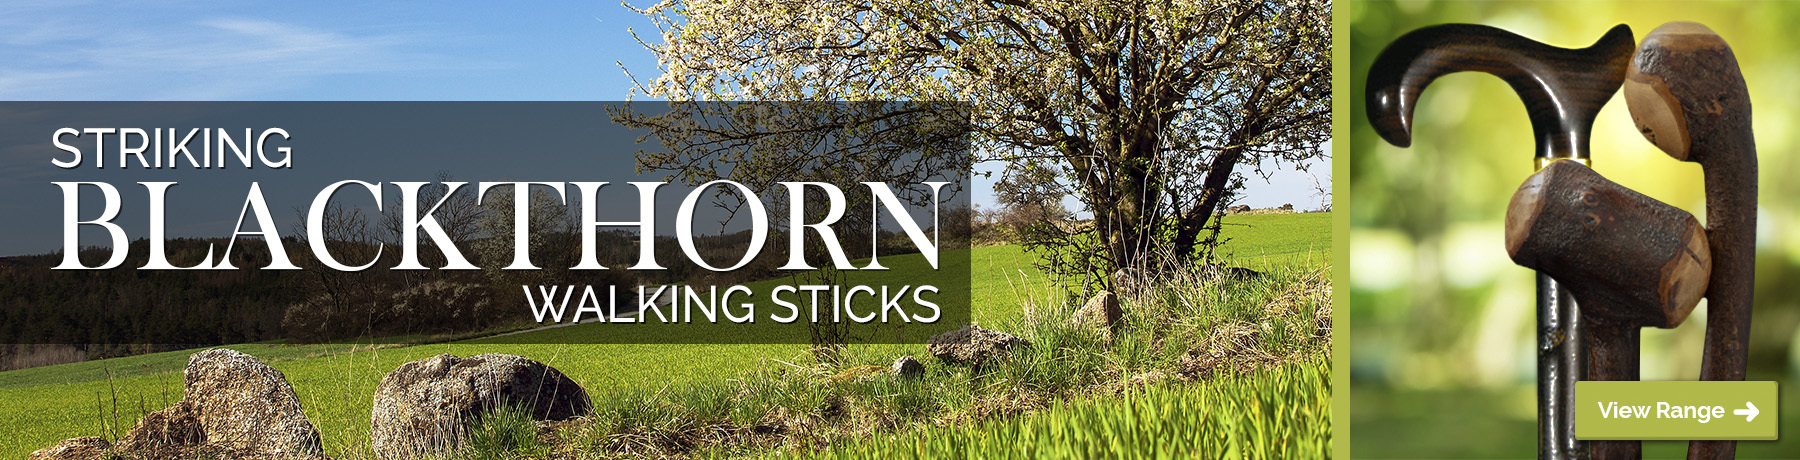 Blackthorn Walking Sticks